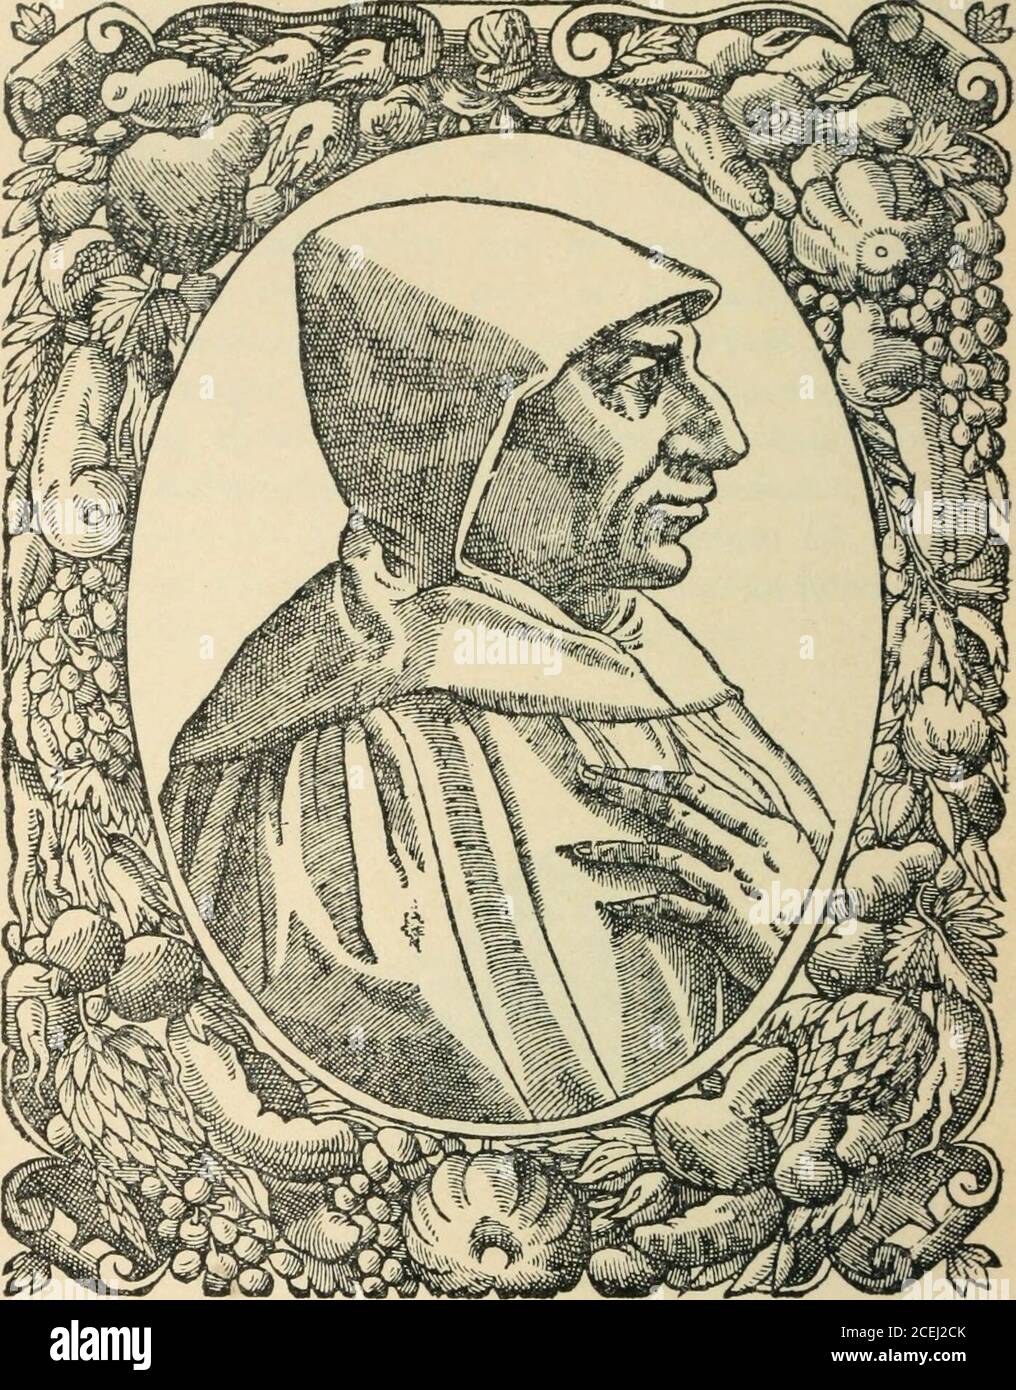 . Beza's Icones, zeitgenössische Porträts von Reformatoren der Religion und Briefe; Faksimile-Reproduktionen der Porträts in Beza's Icones (1580) und in Goulard's Edition (1581). 40. SAVONAROLA. Girolamo Savonarola (Hieronymus Savonarola) GIROLAMO SAVONAROLA, der Patriotmönch Italiens, stammt aus Ferrara und wurde dort am 21. September 1452 geboren. Ofa nachdenklich, fleißig und devotionalTemperament das Leben der Fröhlichkeit und revelryto, die die Familie hatte Eingang durch Gerichtverbindung hatte keine Anziehungskräfte für den dritten Sohn von Niccolo und Elena Savonarola. Seine raffinierte naturerecoiled aus dem frivolit Stockfoto